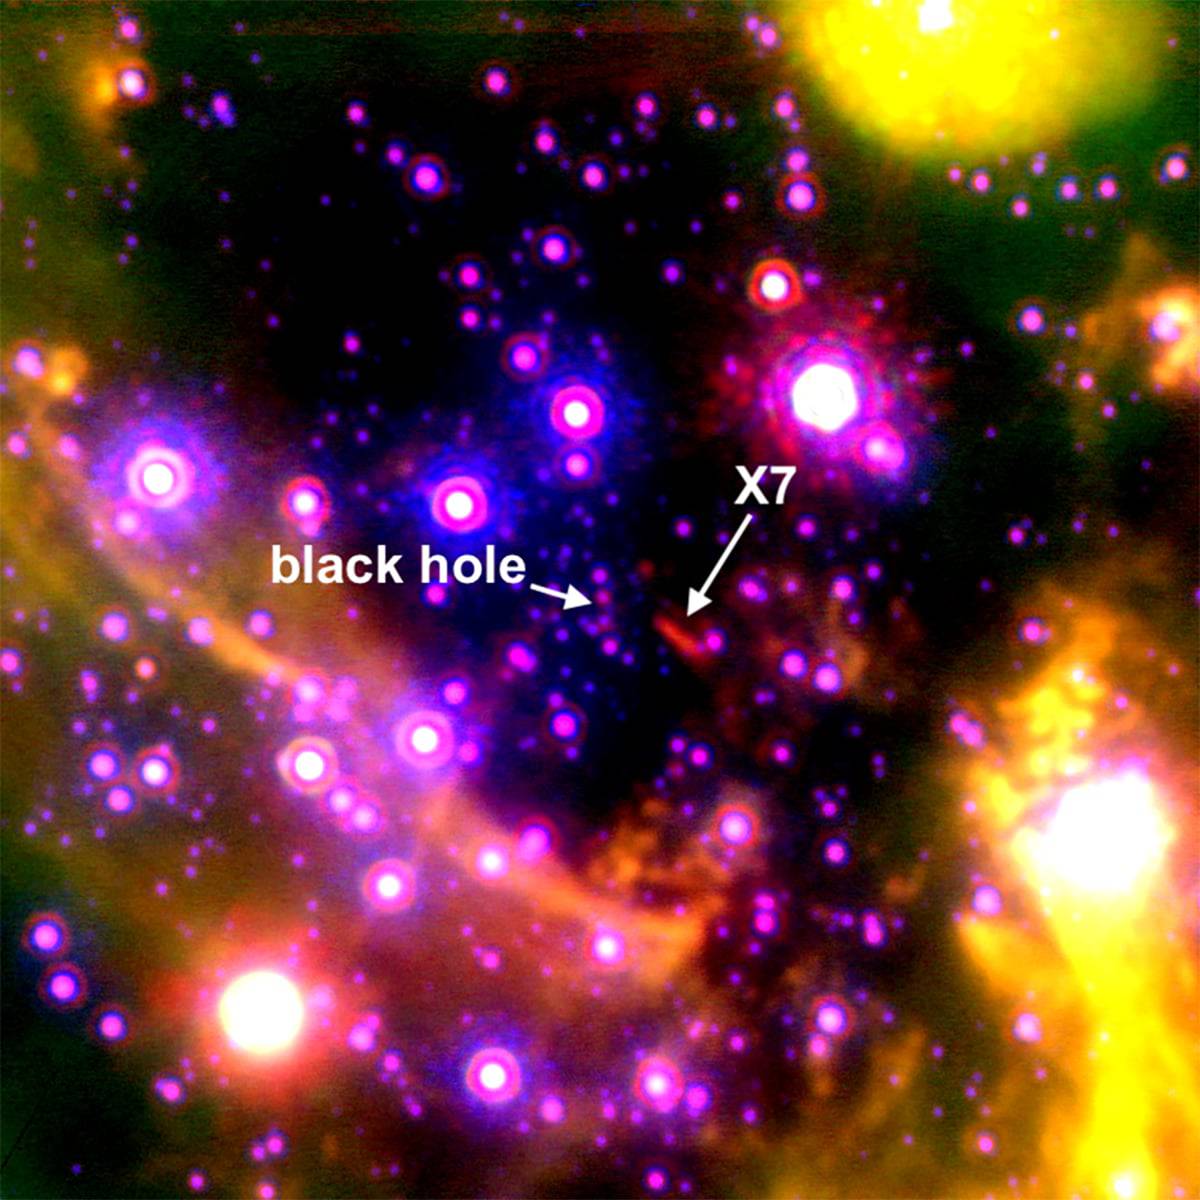 天の川銀河の中心にある超巨大ブラックホールに、謎の物体が引きずり込まれようとしている